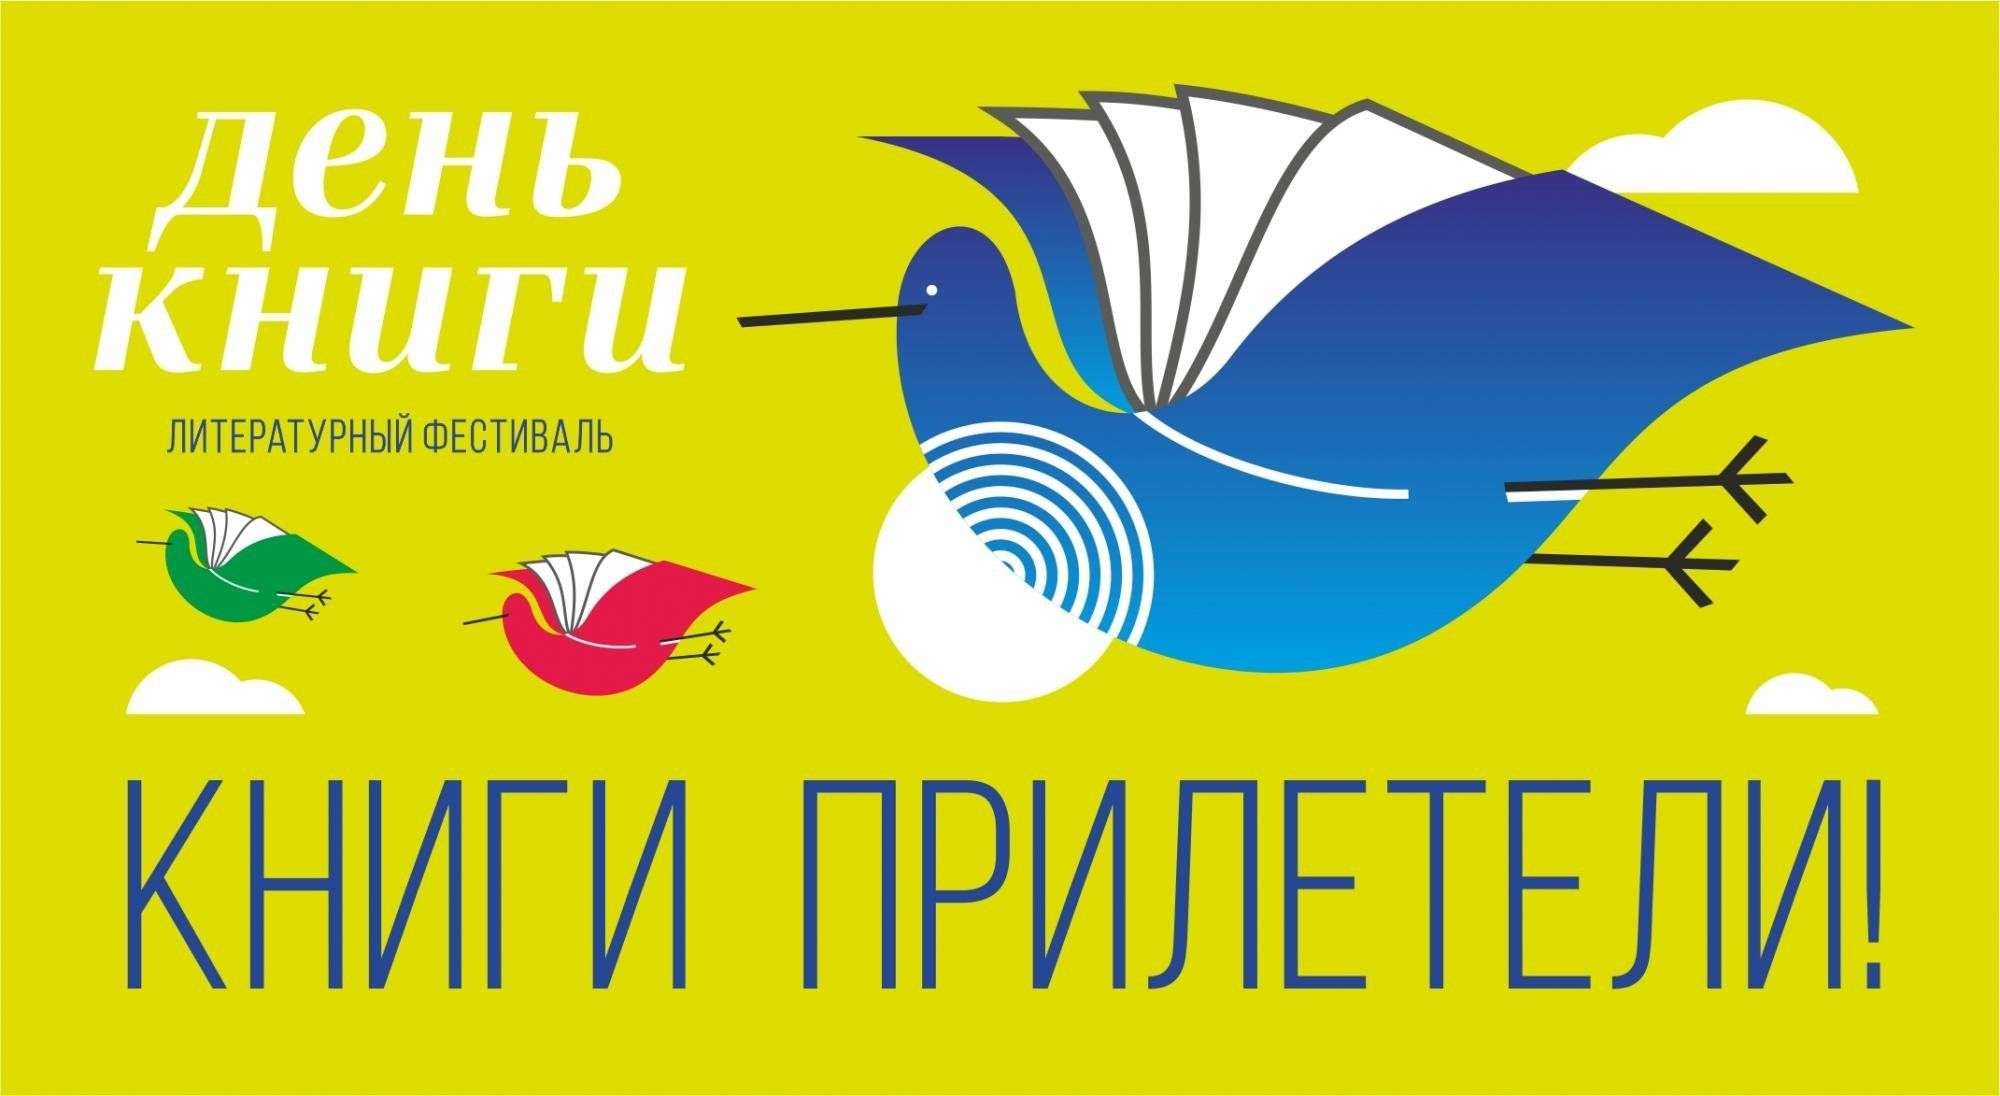 Уникальный литературный фестиваль «День книги» 3 февраля пройдет в Бердске